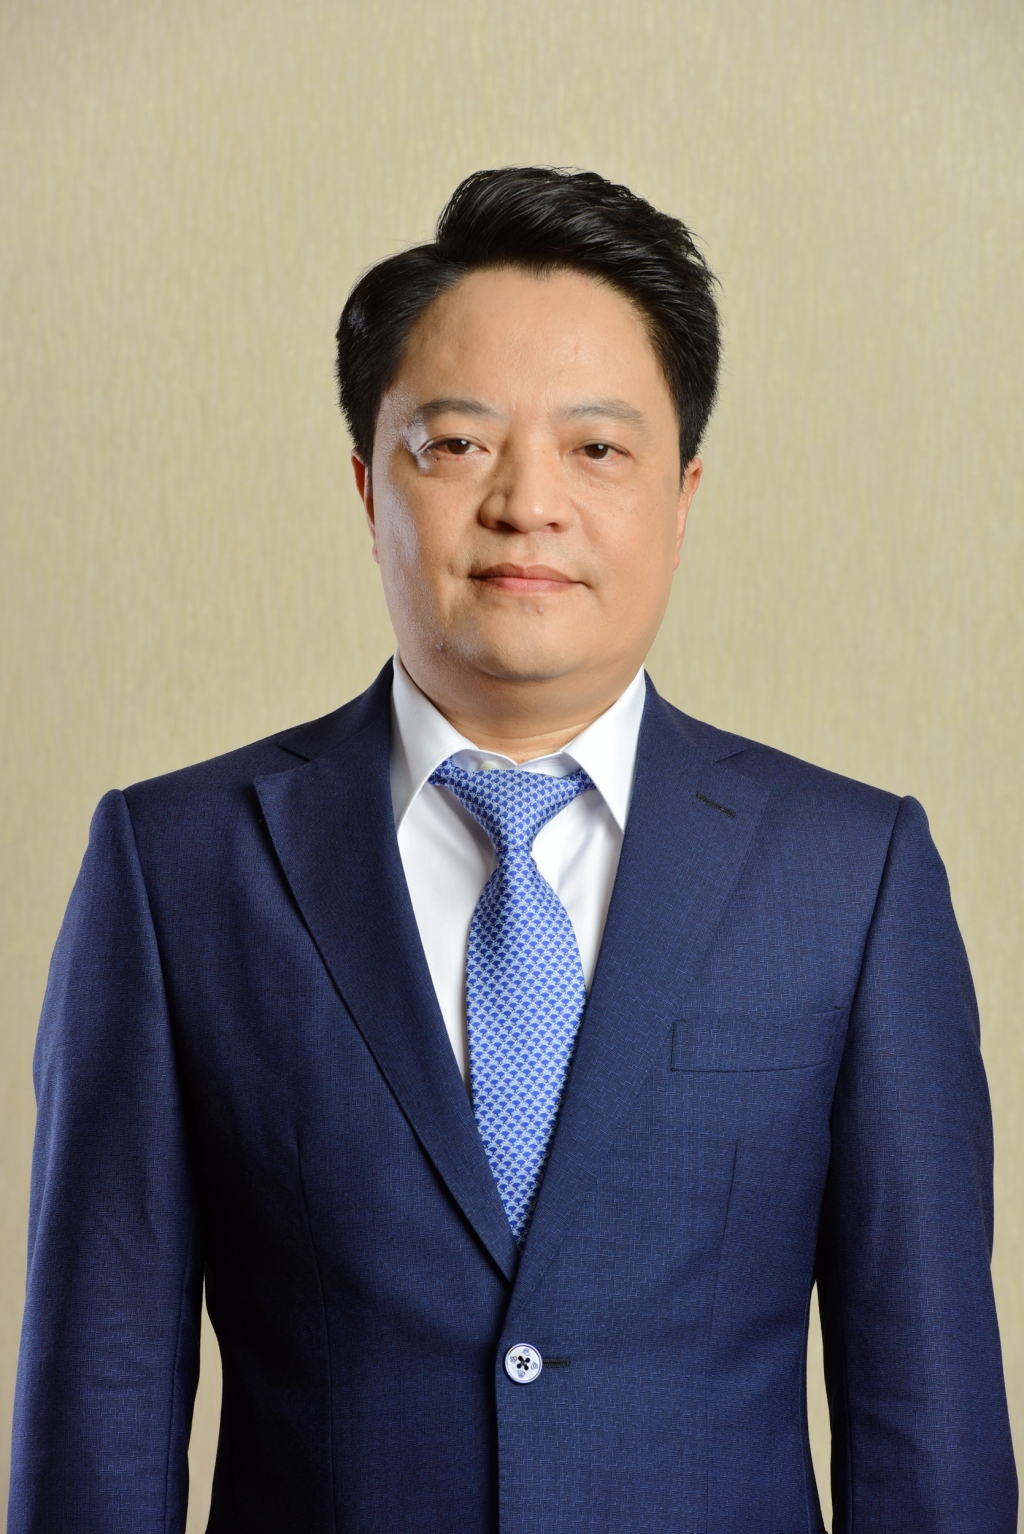 Ông Hoàng Văn Quang – Phó Tổng giám đốc PV GAS được HĐQT PV GAS nhất trí bổ nhiệm giữ chức vụ Tổng giám đốc PV GAS